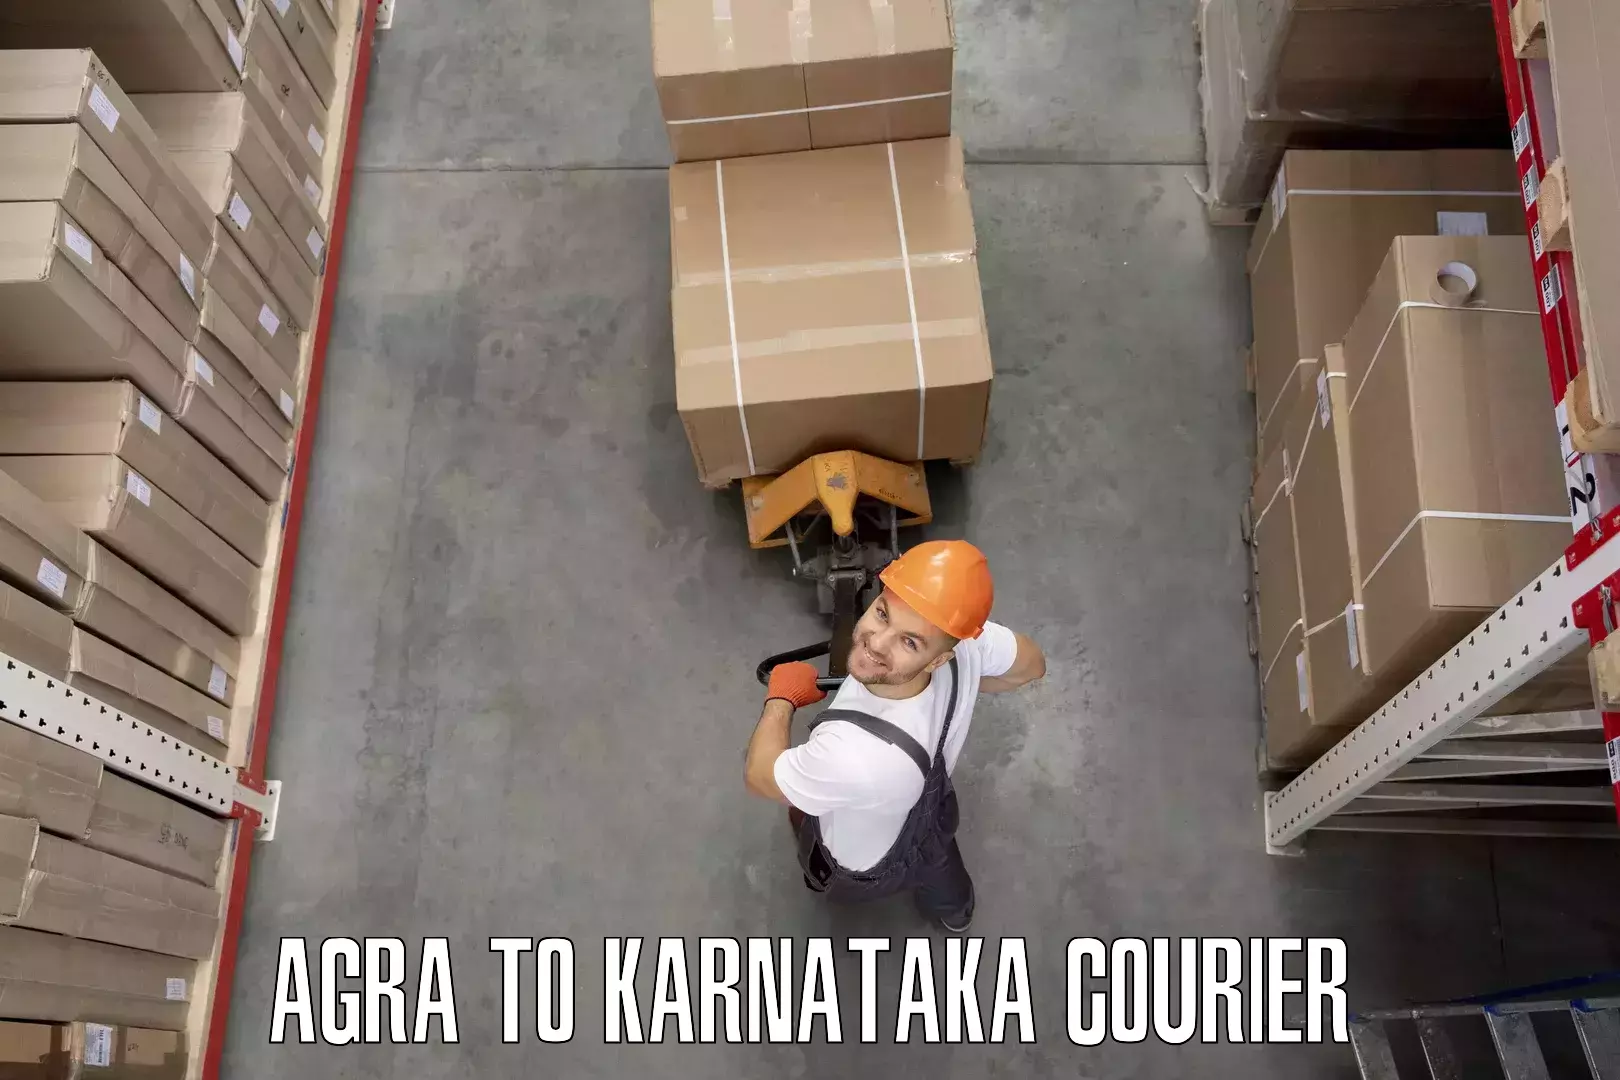 Furniture moving service Agra to Ramanagara